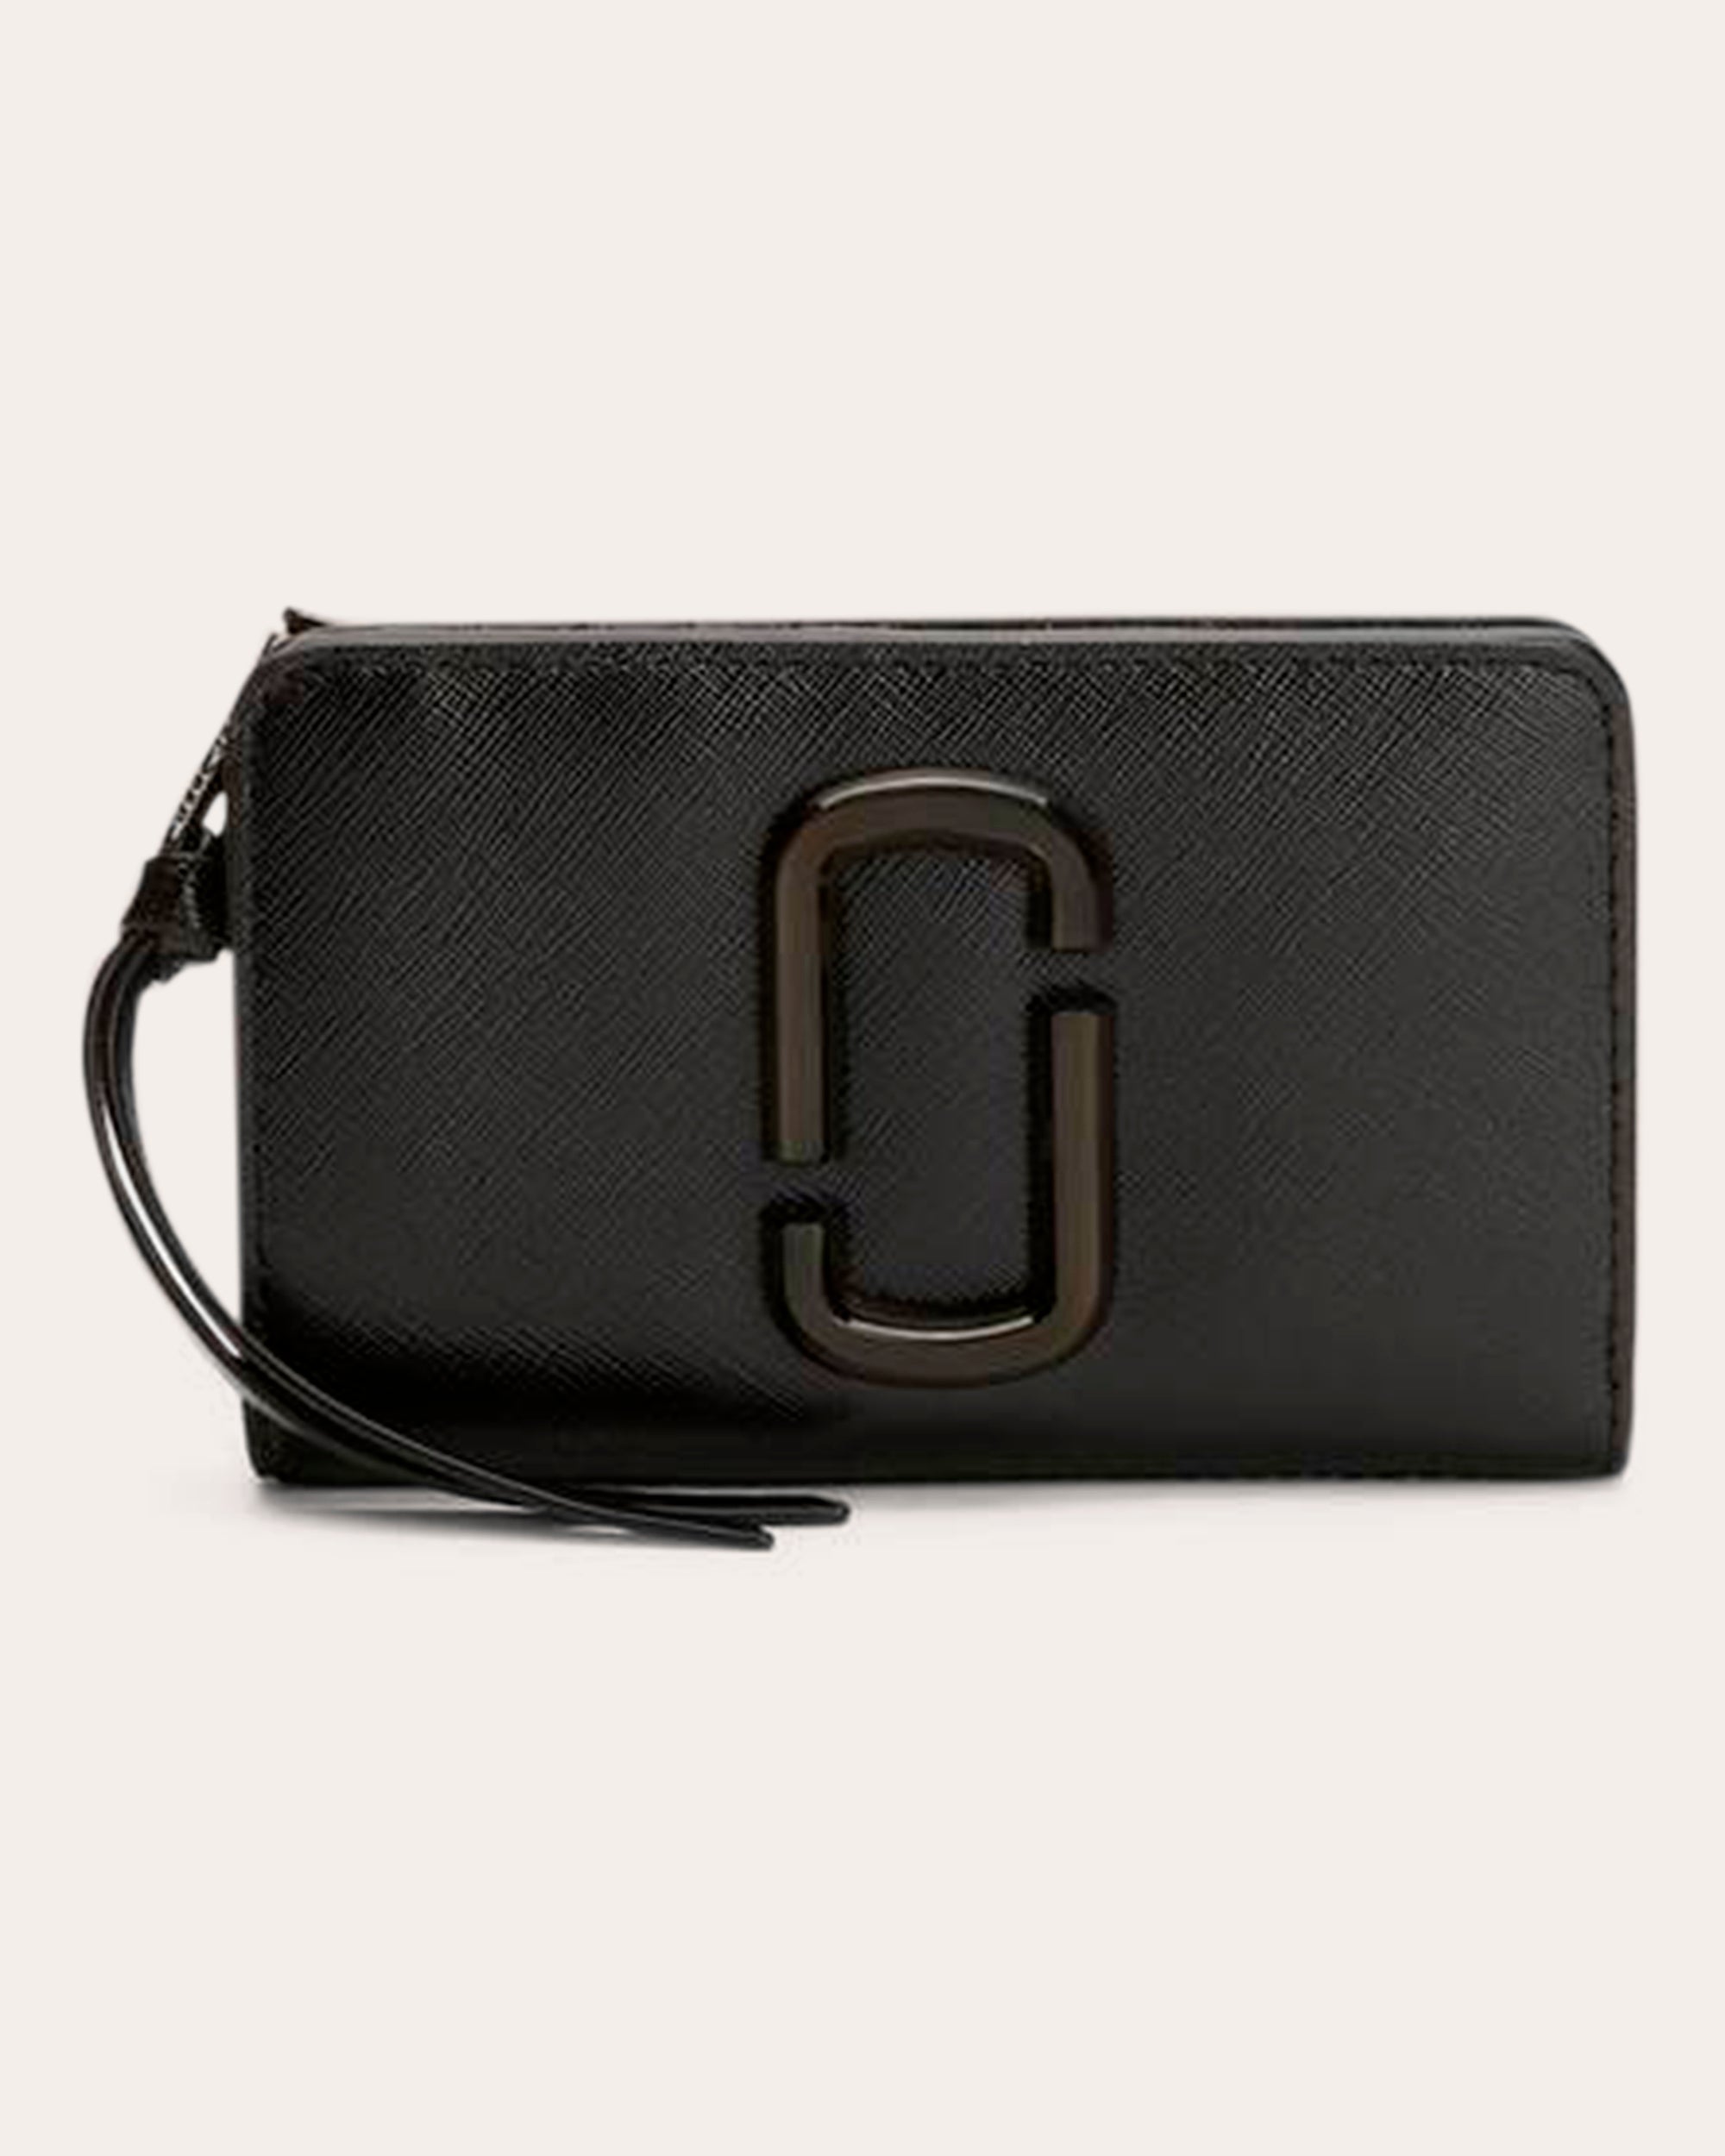 Marc Jacobs Women's Snapshot Dtm Compact Wallet In Black